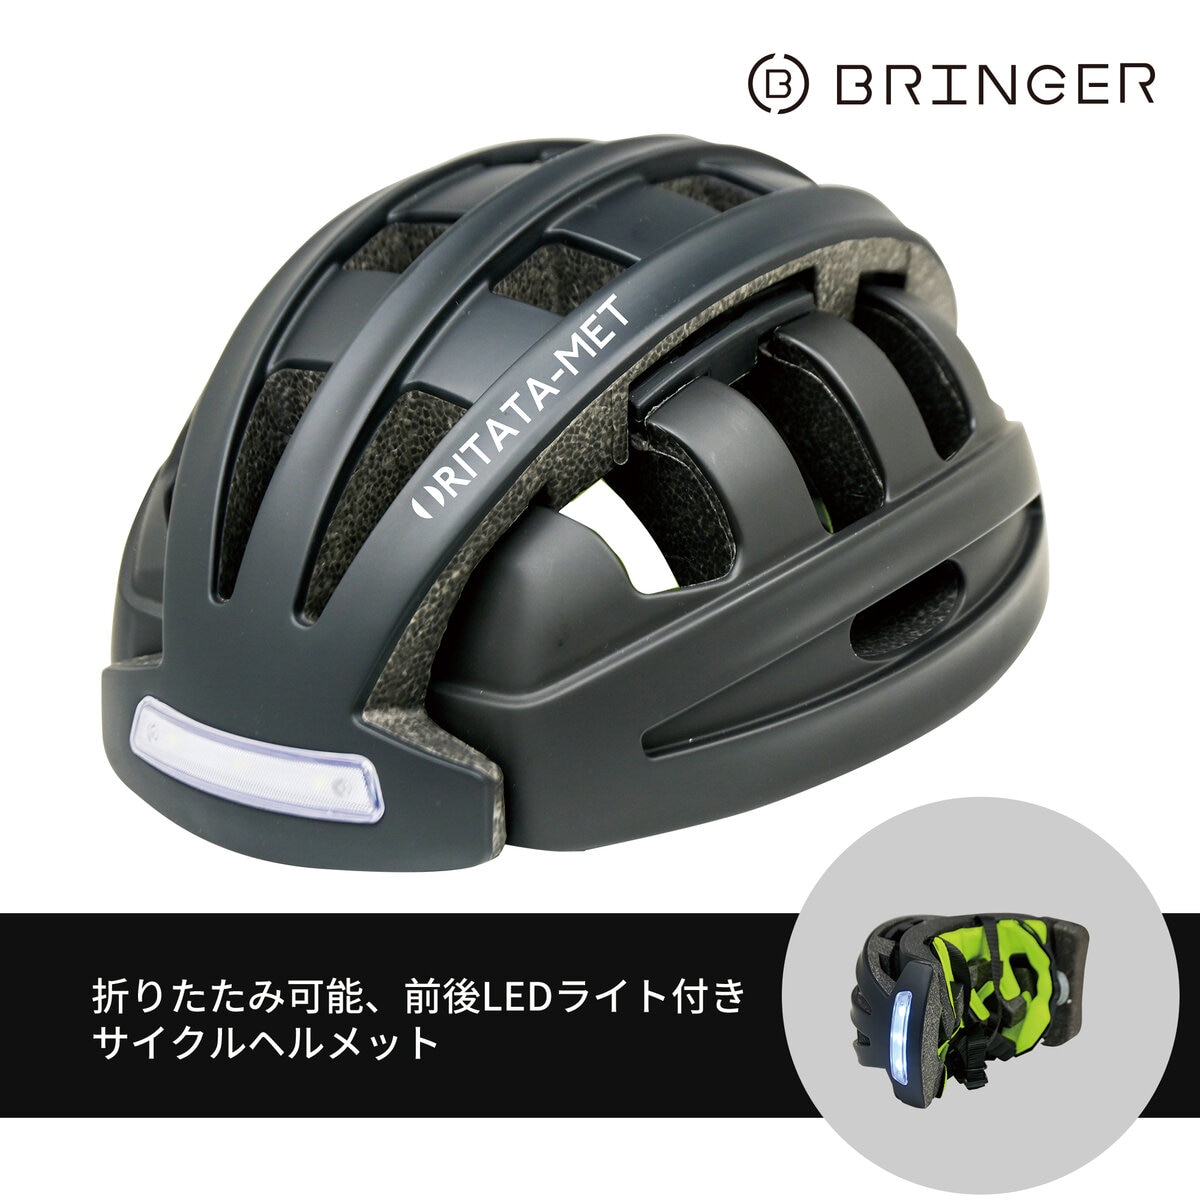 ブリンガー 折り畳み式 自転車 ヘルメット FT-888D